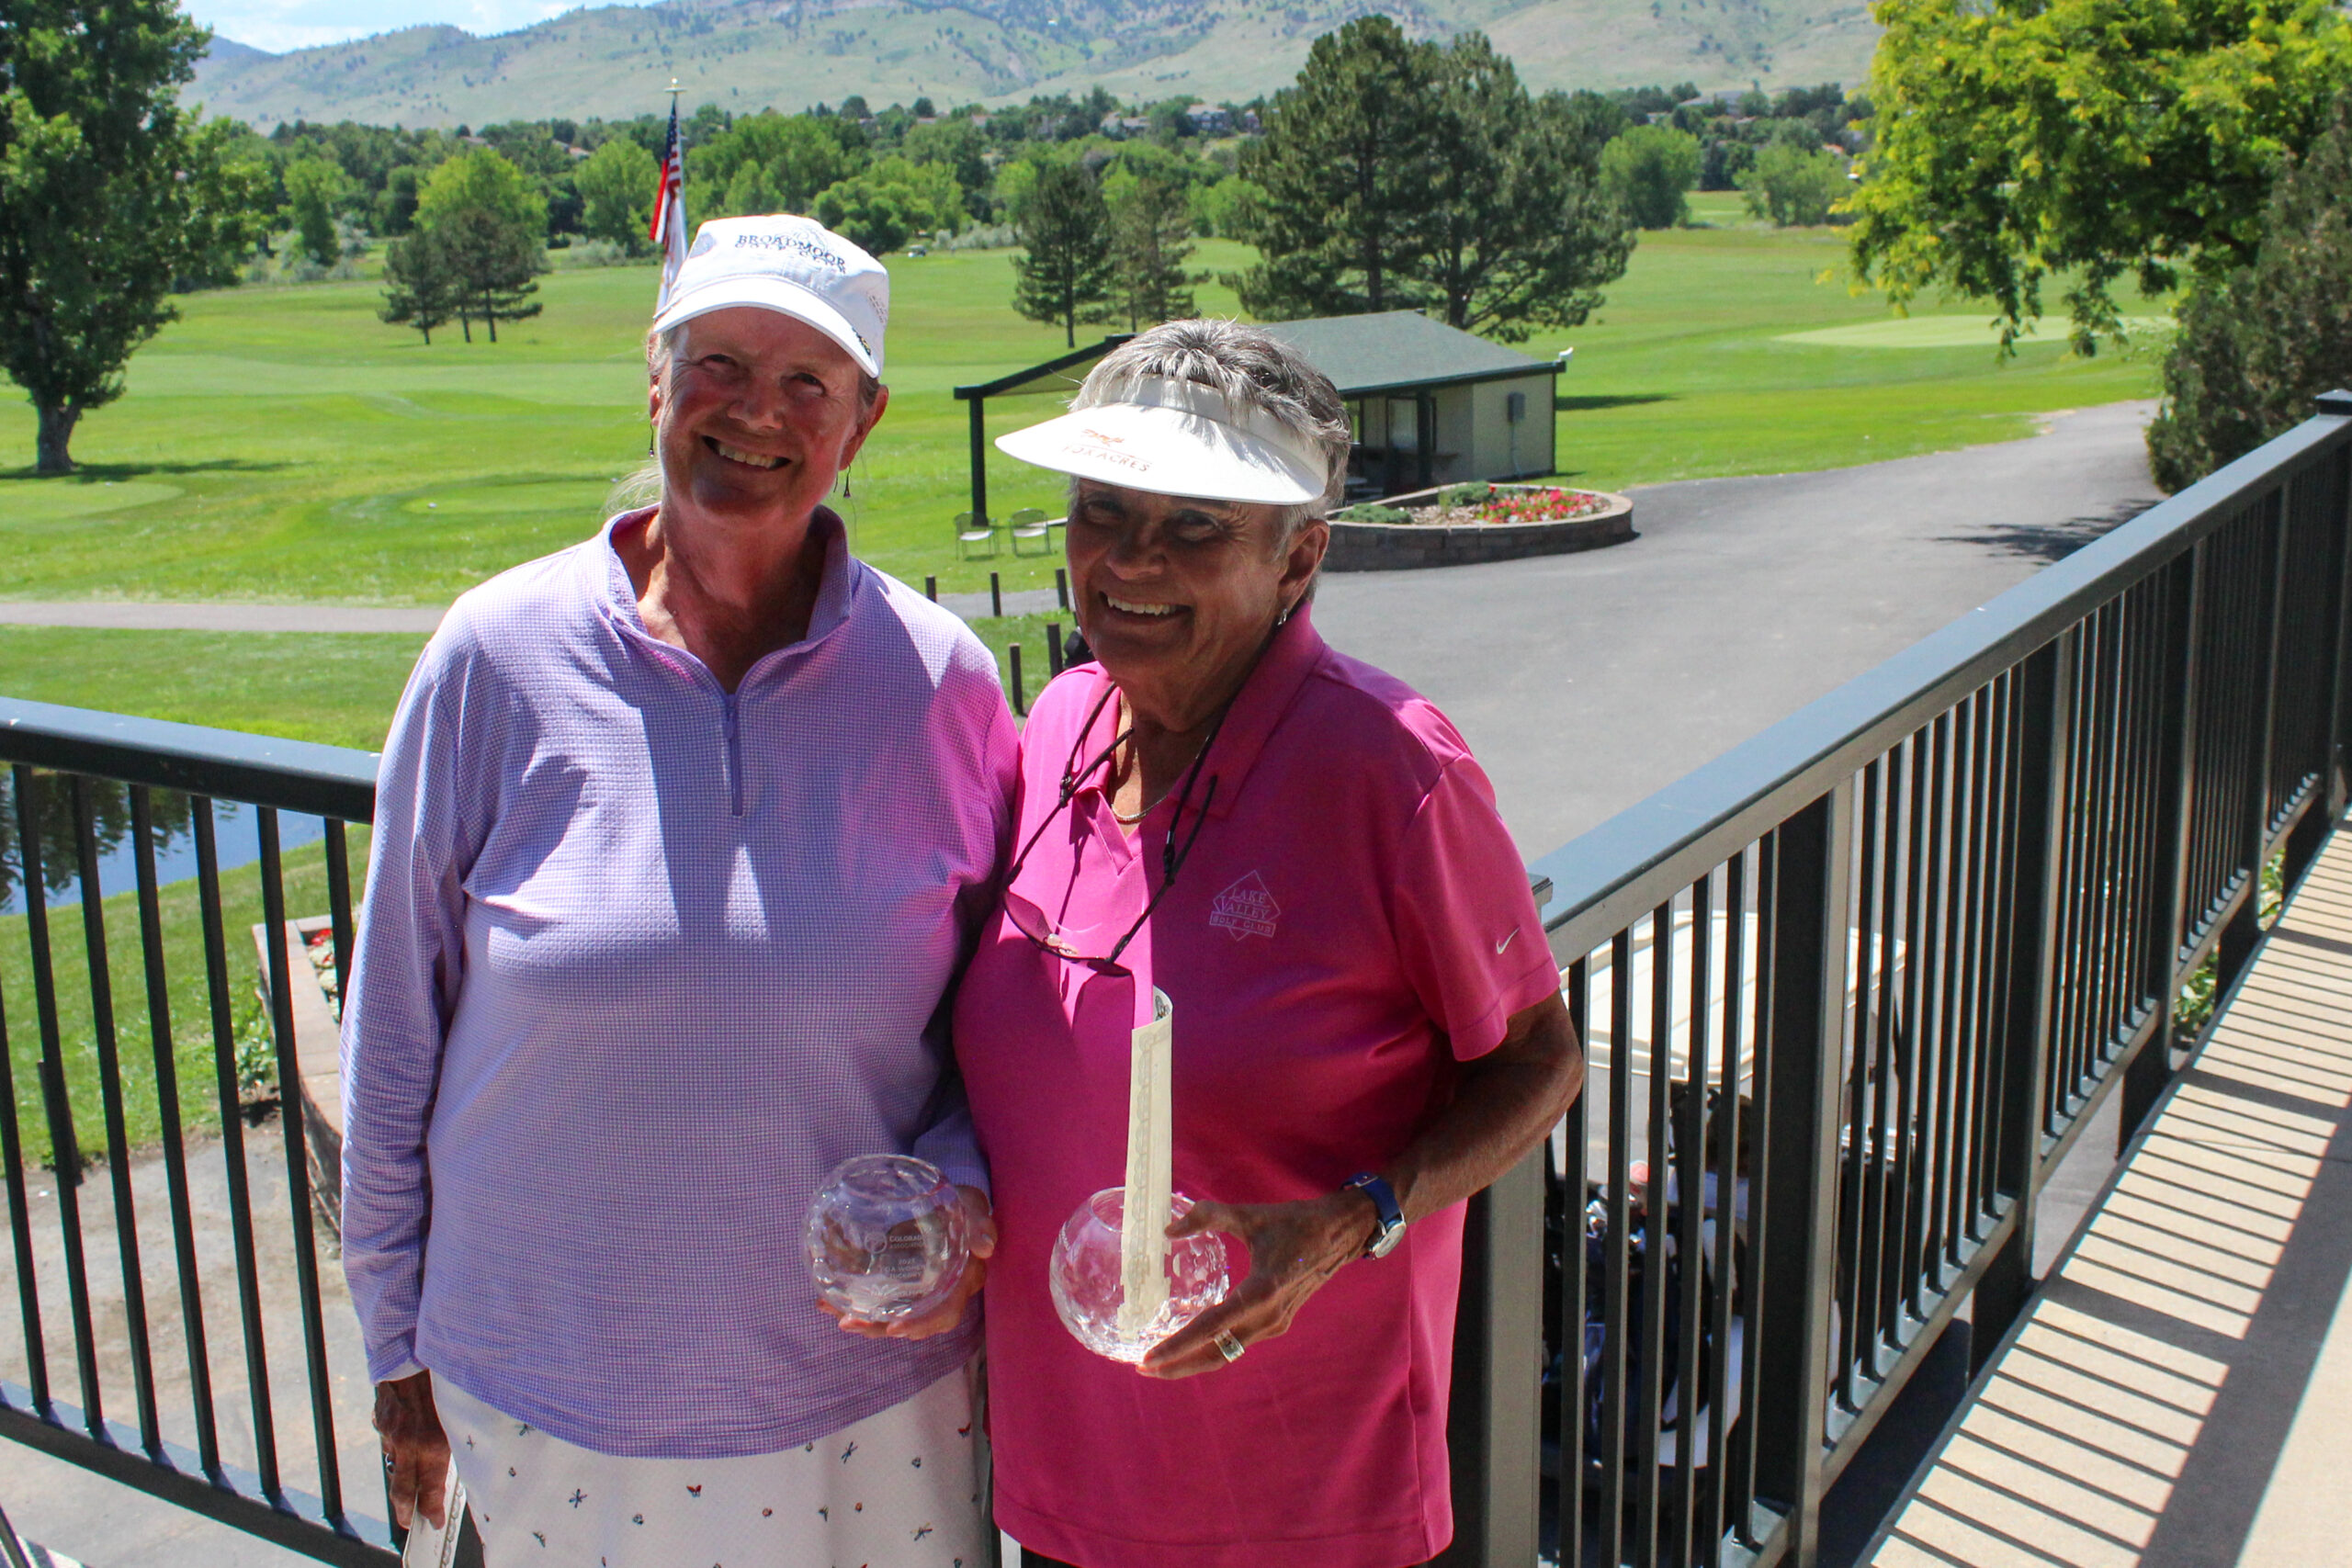 2023 CDA Foundation Golf Tournament for Charity - Colorado Dental  Association